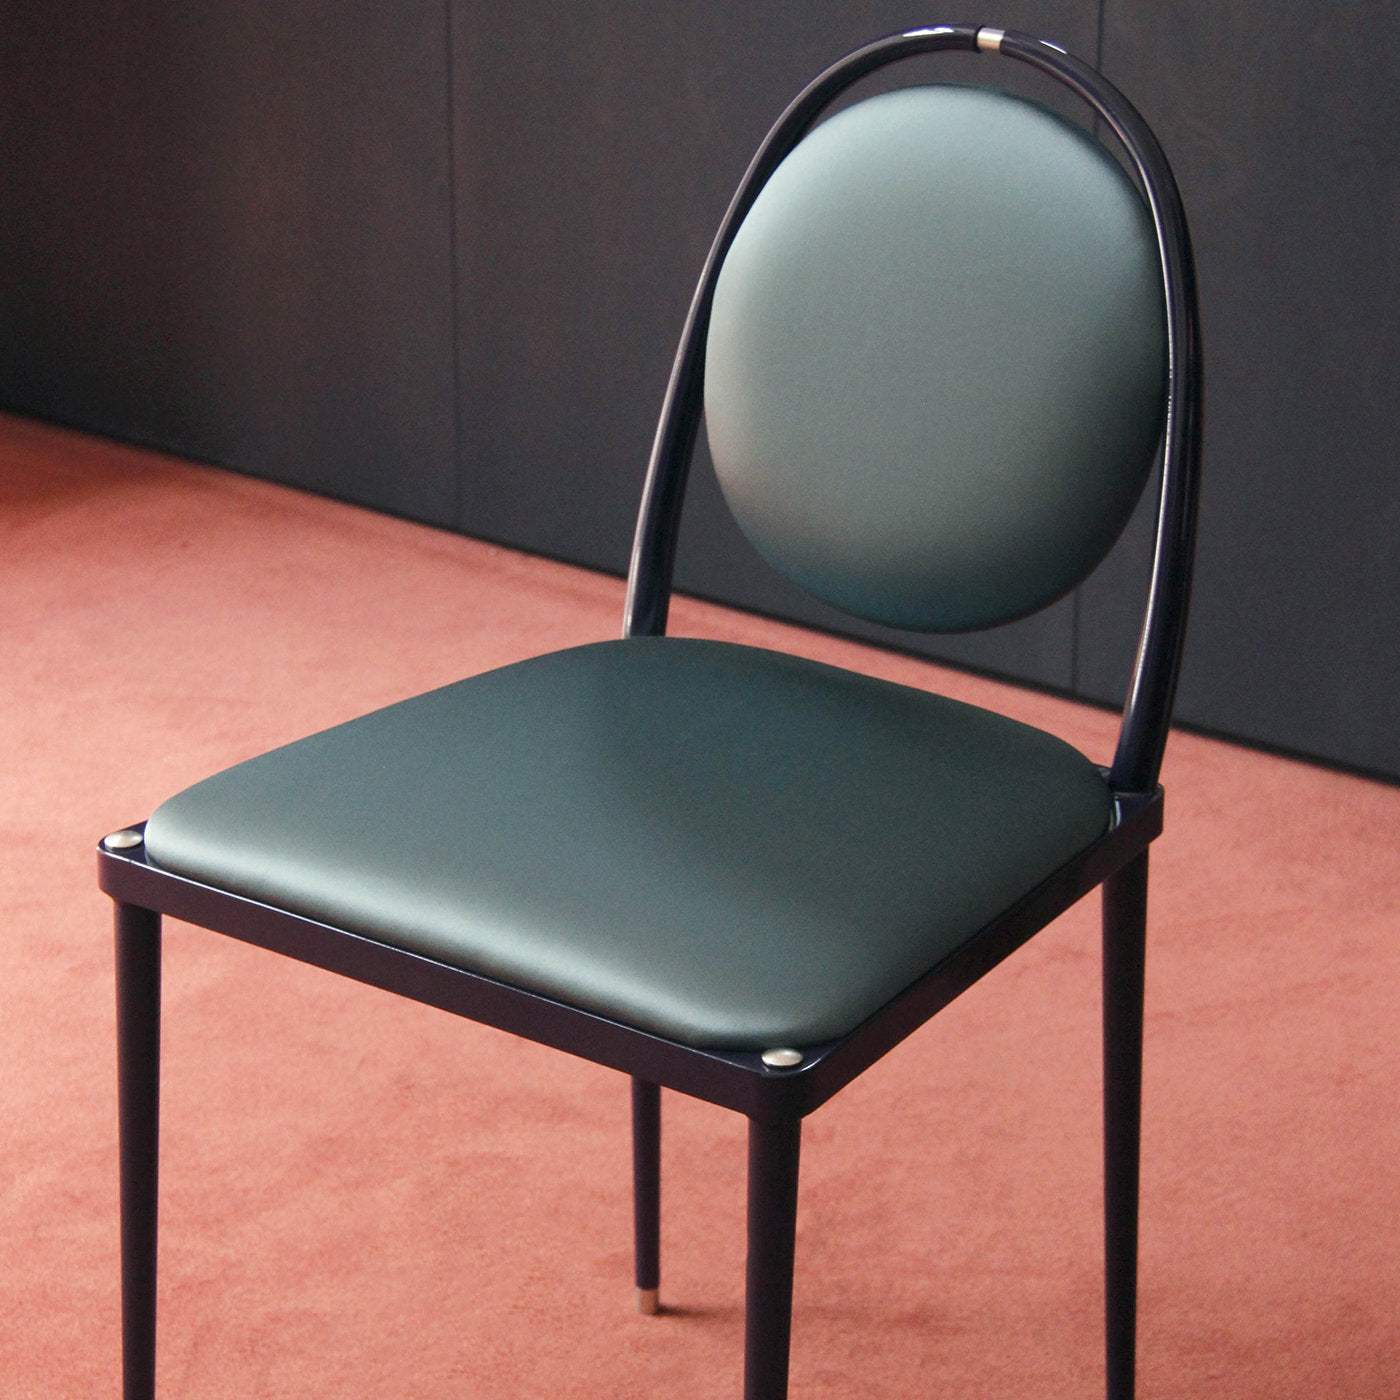 Balzaretti Teal Blue Chair - Alternative view 5